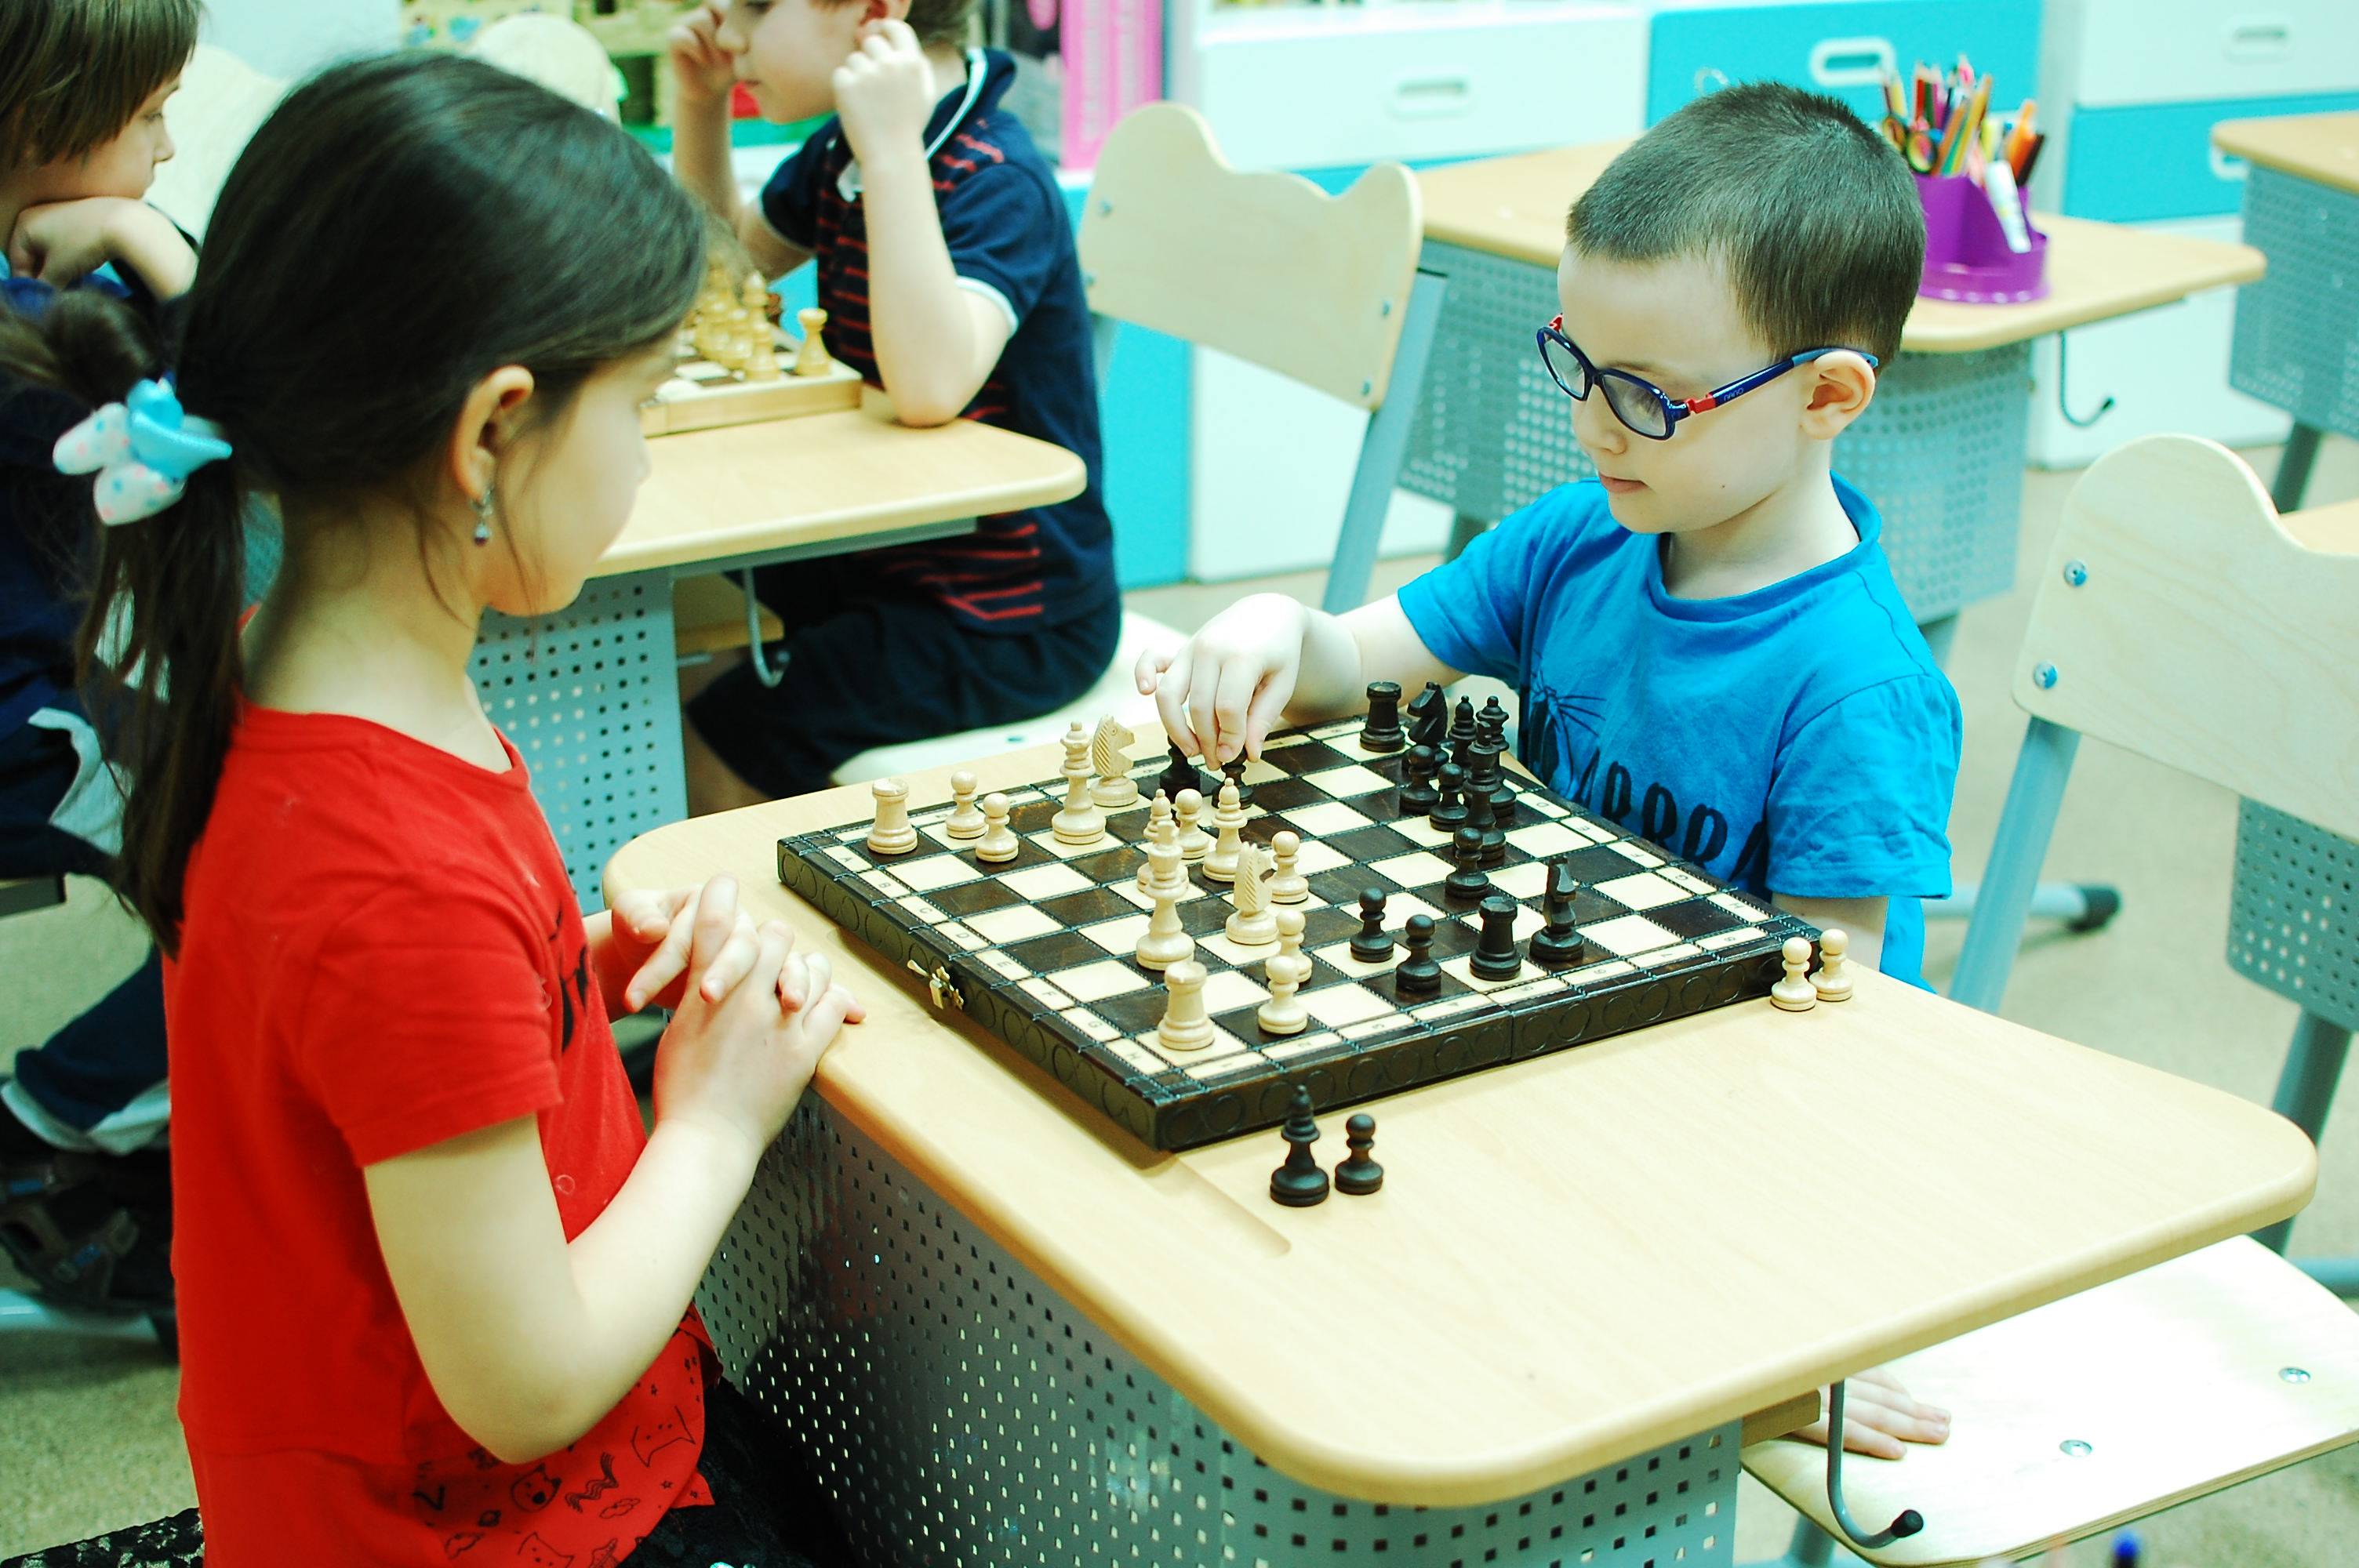 Польза шахмат для детей: что развивают и как научить играть